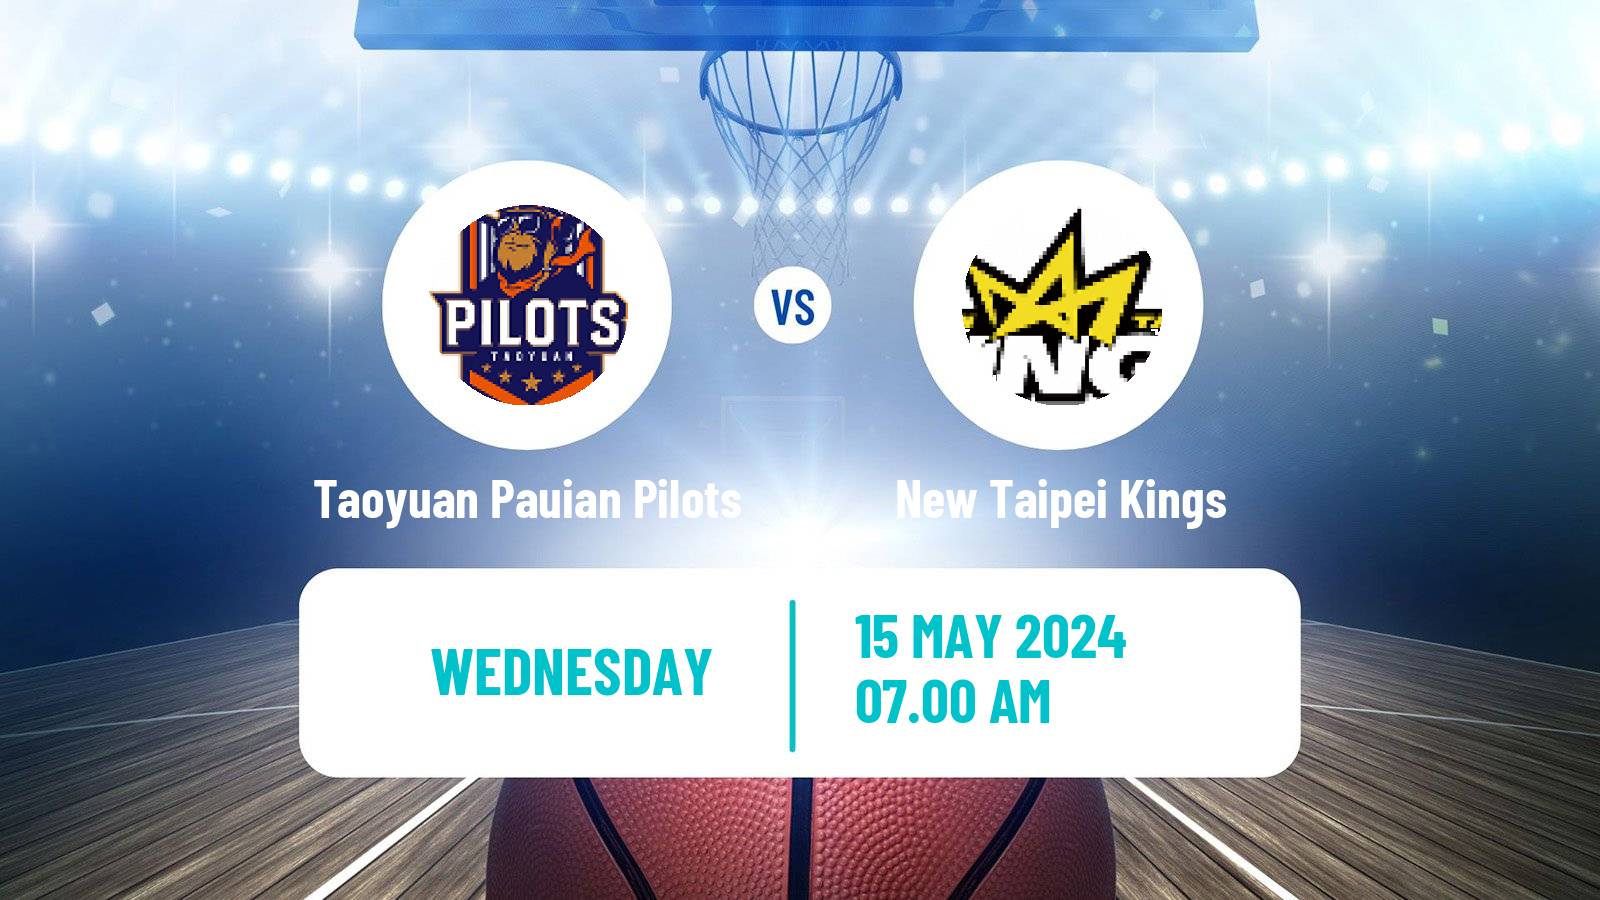 Basketball Taiwan P League Basketball Taoyuan Pauian Pilots - New Taipei Kings